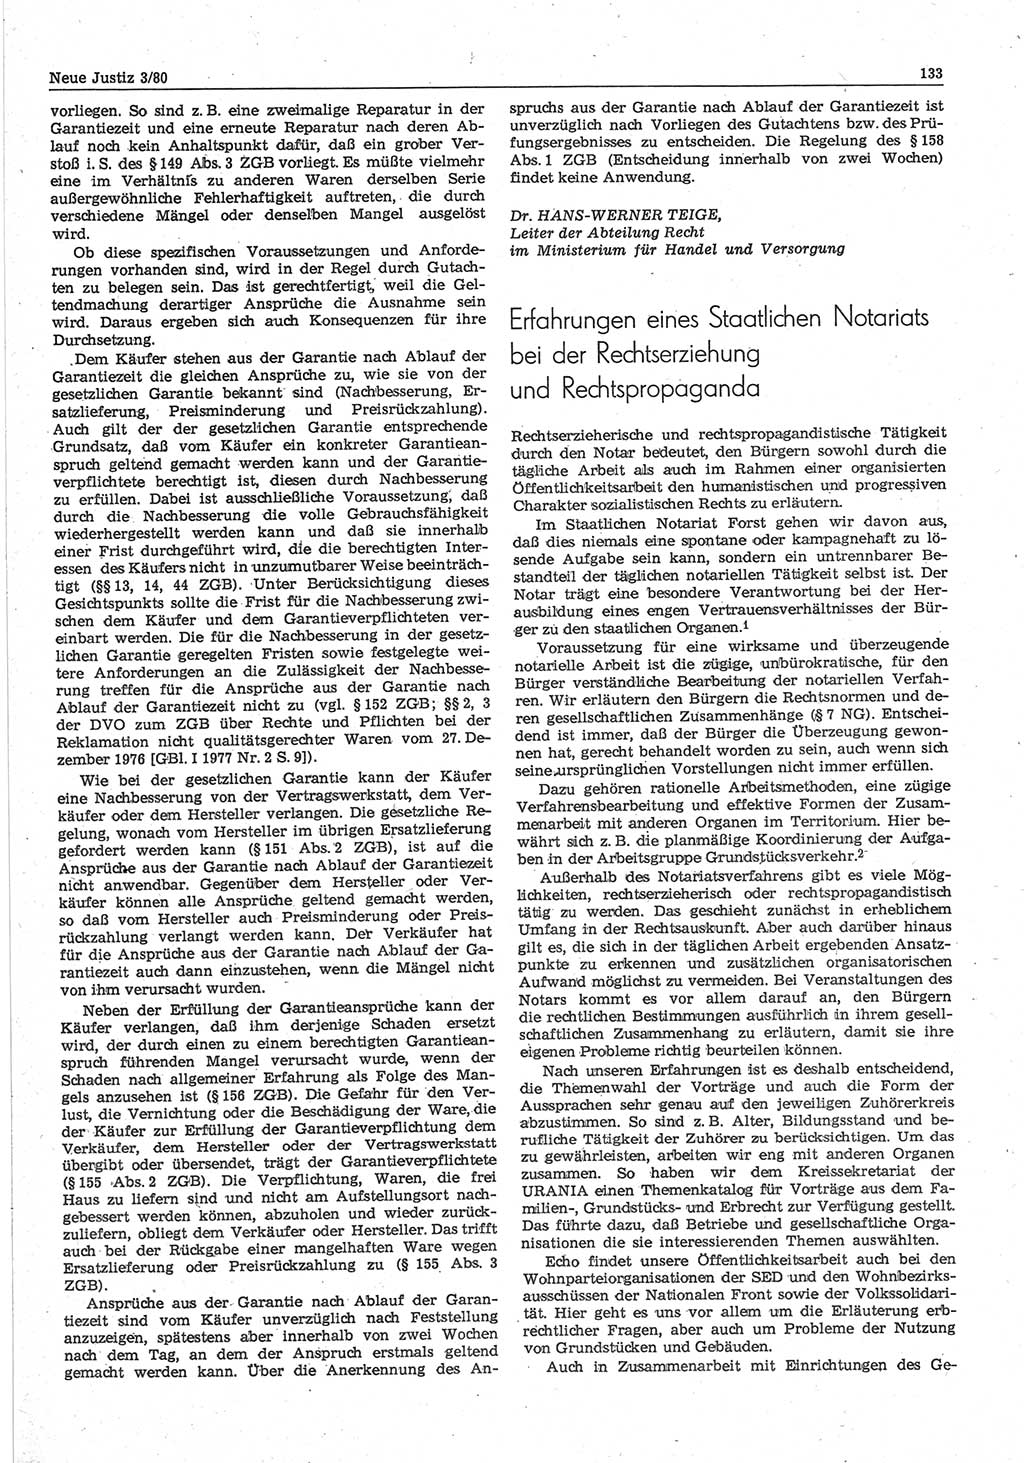 Neue Justiz (NJ), Zeitschrift für sozialistisches Recht und Gesetzlichkeit [Deutsche Demokratische Republik (DDR)], 34. Jahrgang 1980, Seite 133 (NJ DDR 1980, S. 133)